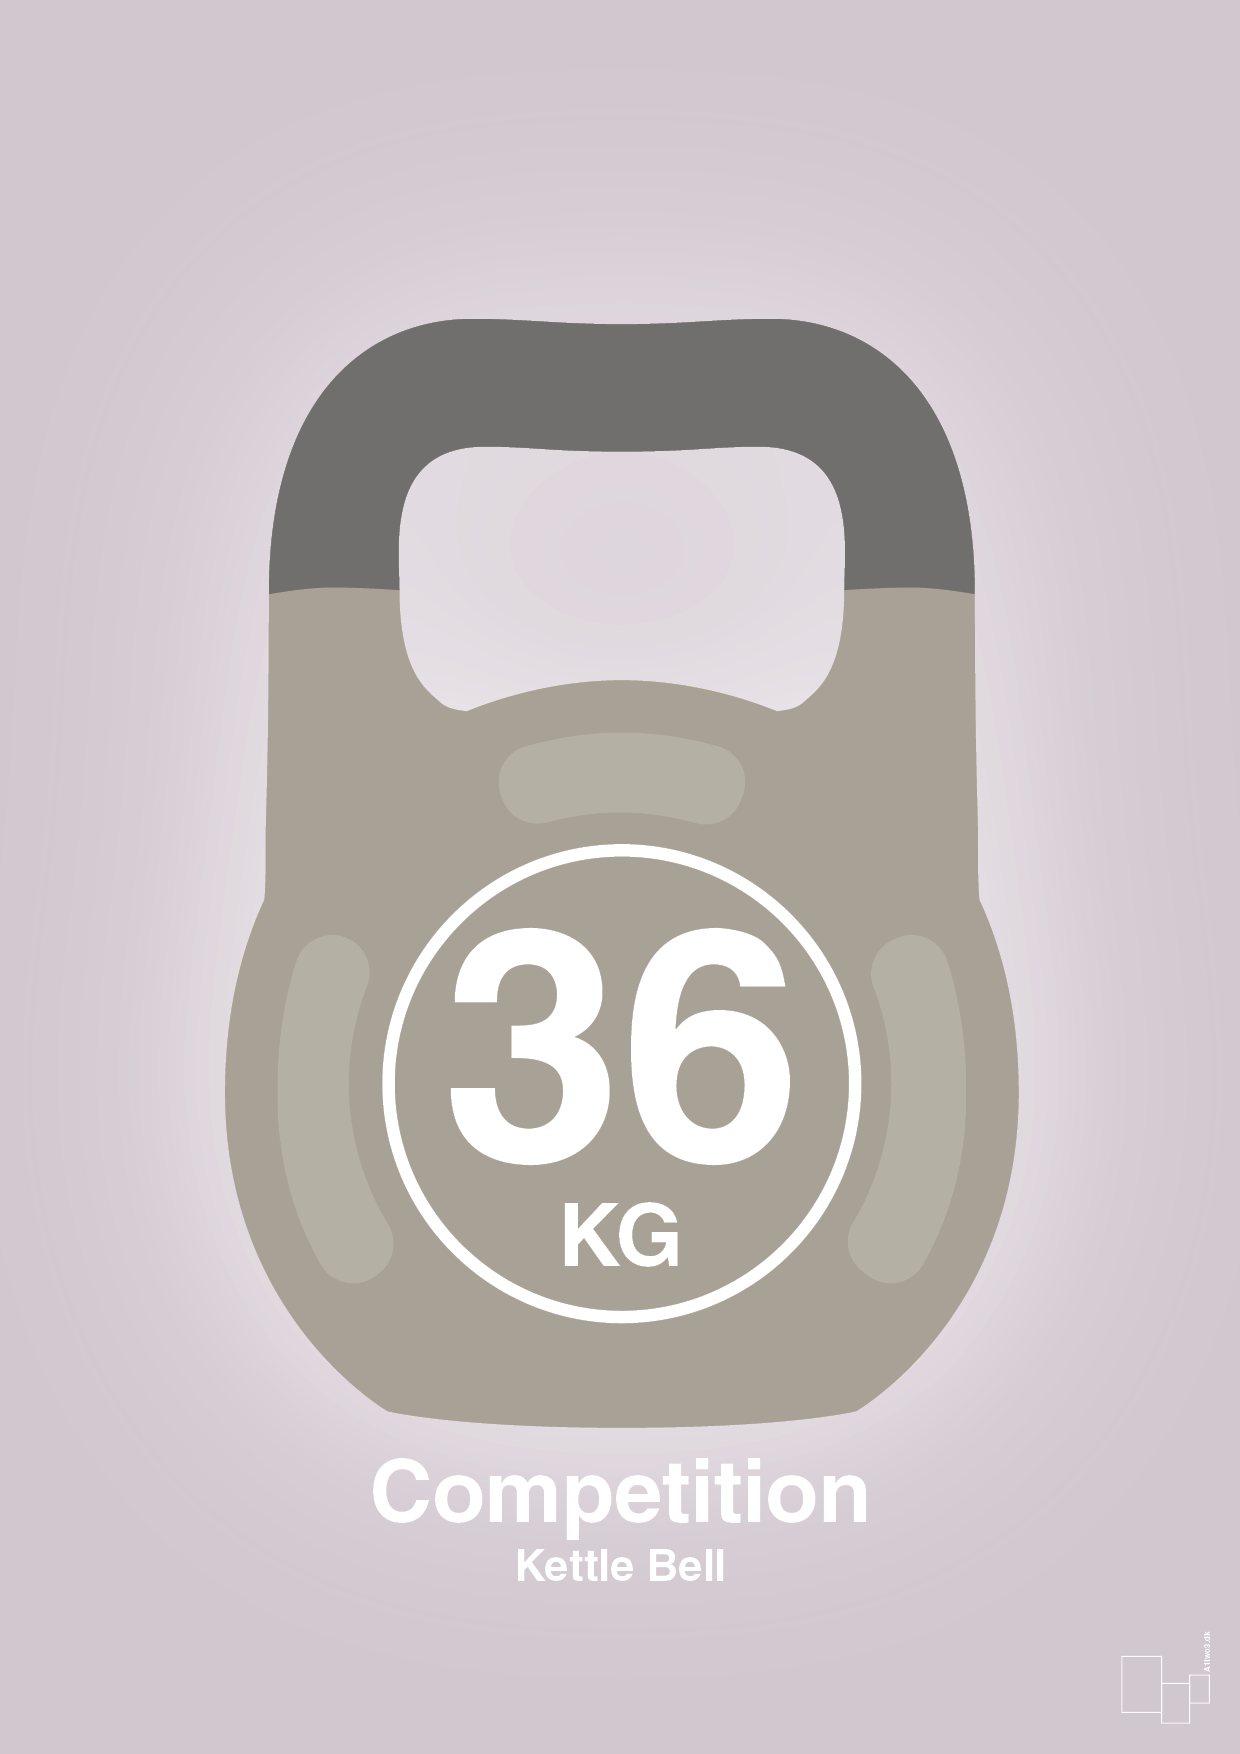 kettle bell 36 kg - competition color - Plakat med Grafik i Dusty Lilac